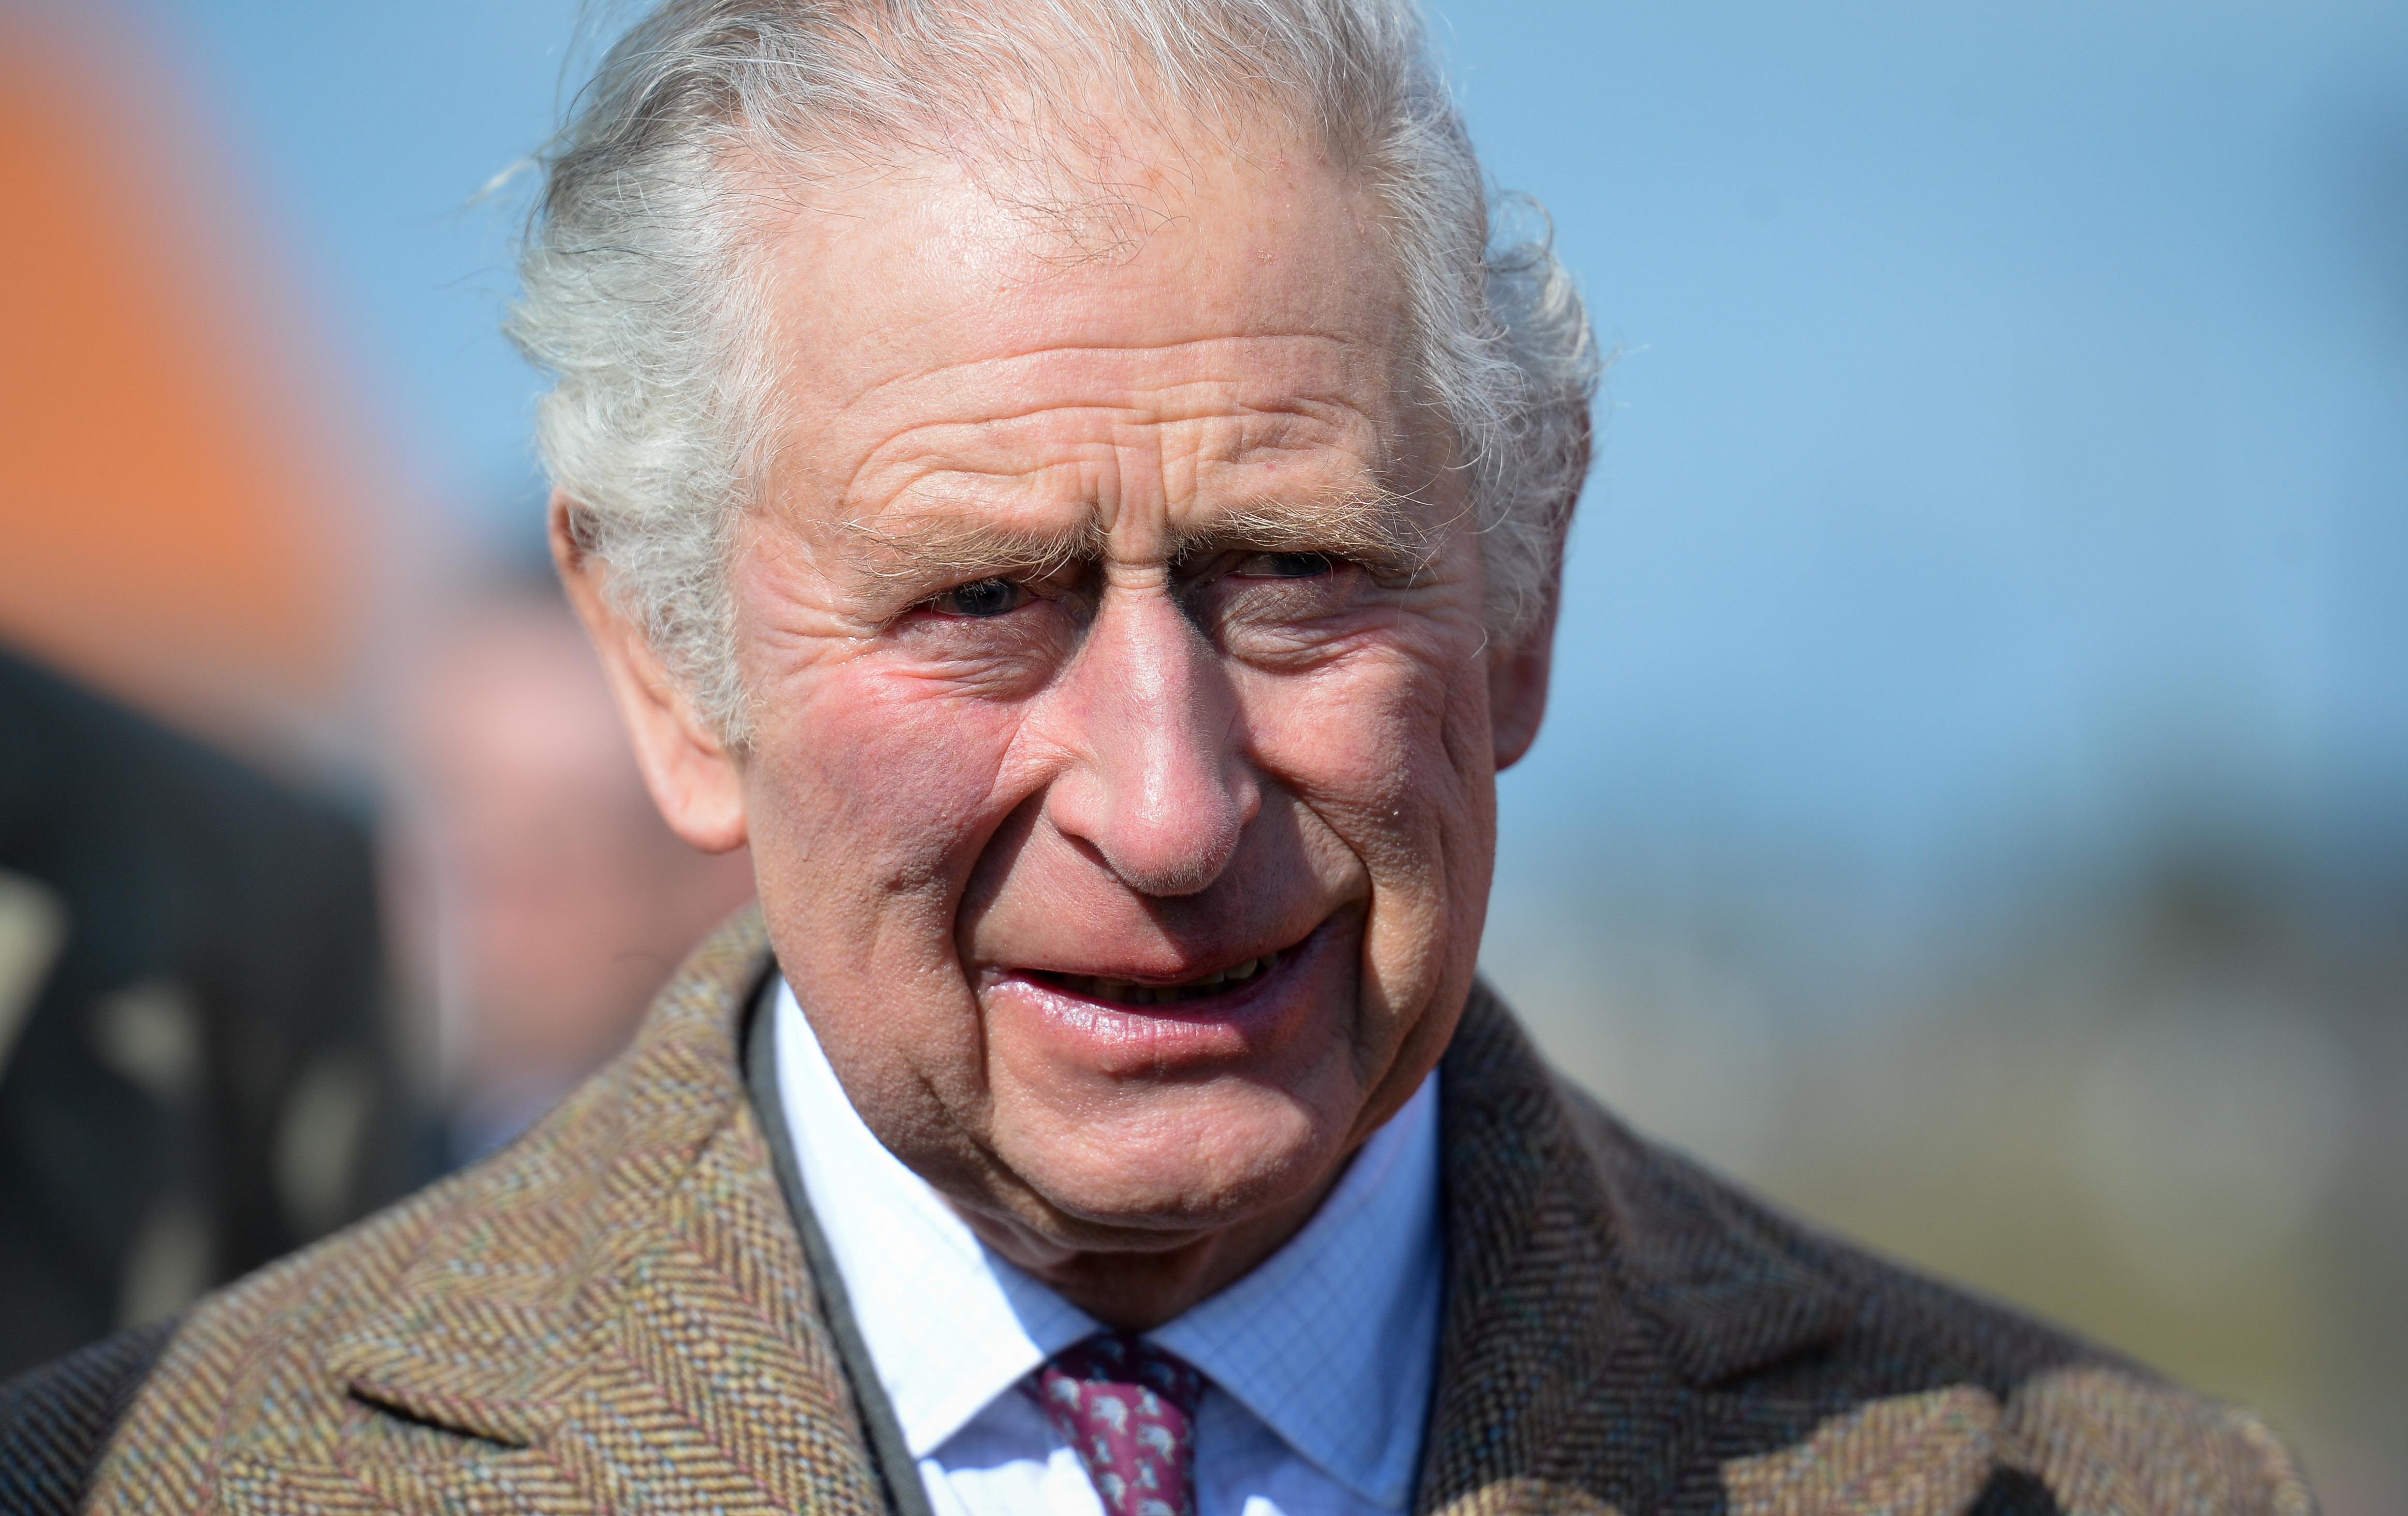 Le roi Charles III lors de sa visite au bois du centenaire de la Royal British Legion le 07 mars 2022 à Newquay, en Angleterre | Source : Getty Images